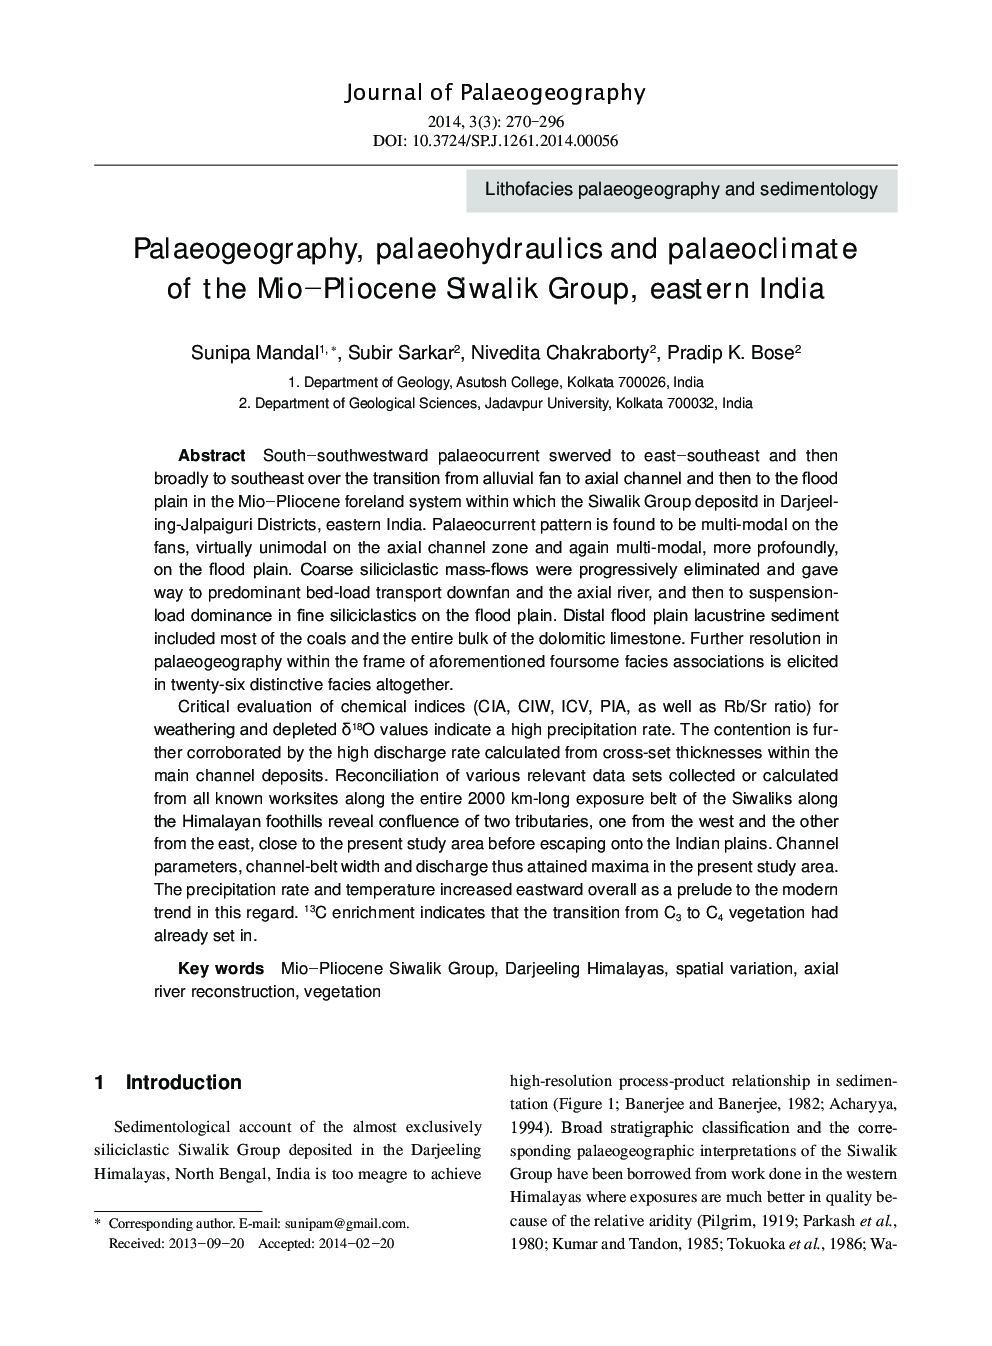 پالئوئوگرافی، پهید هیدرولیک و پائئوسکلیمات از گروه میکا پیلوسان سیوالیک، شرق هند 